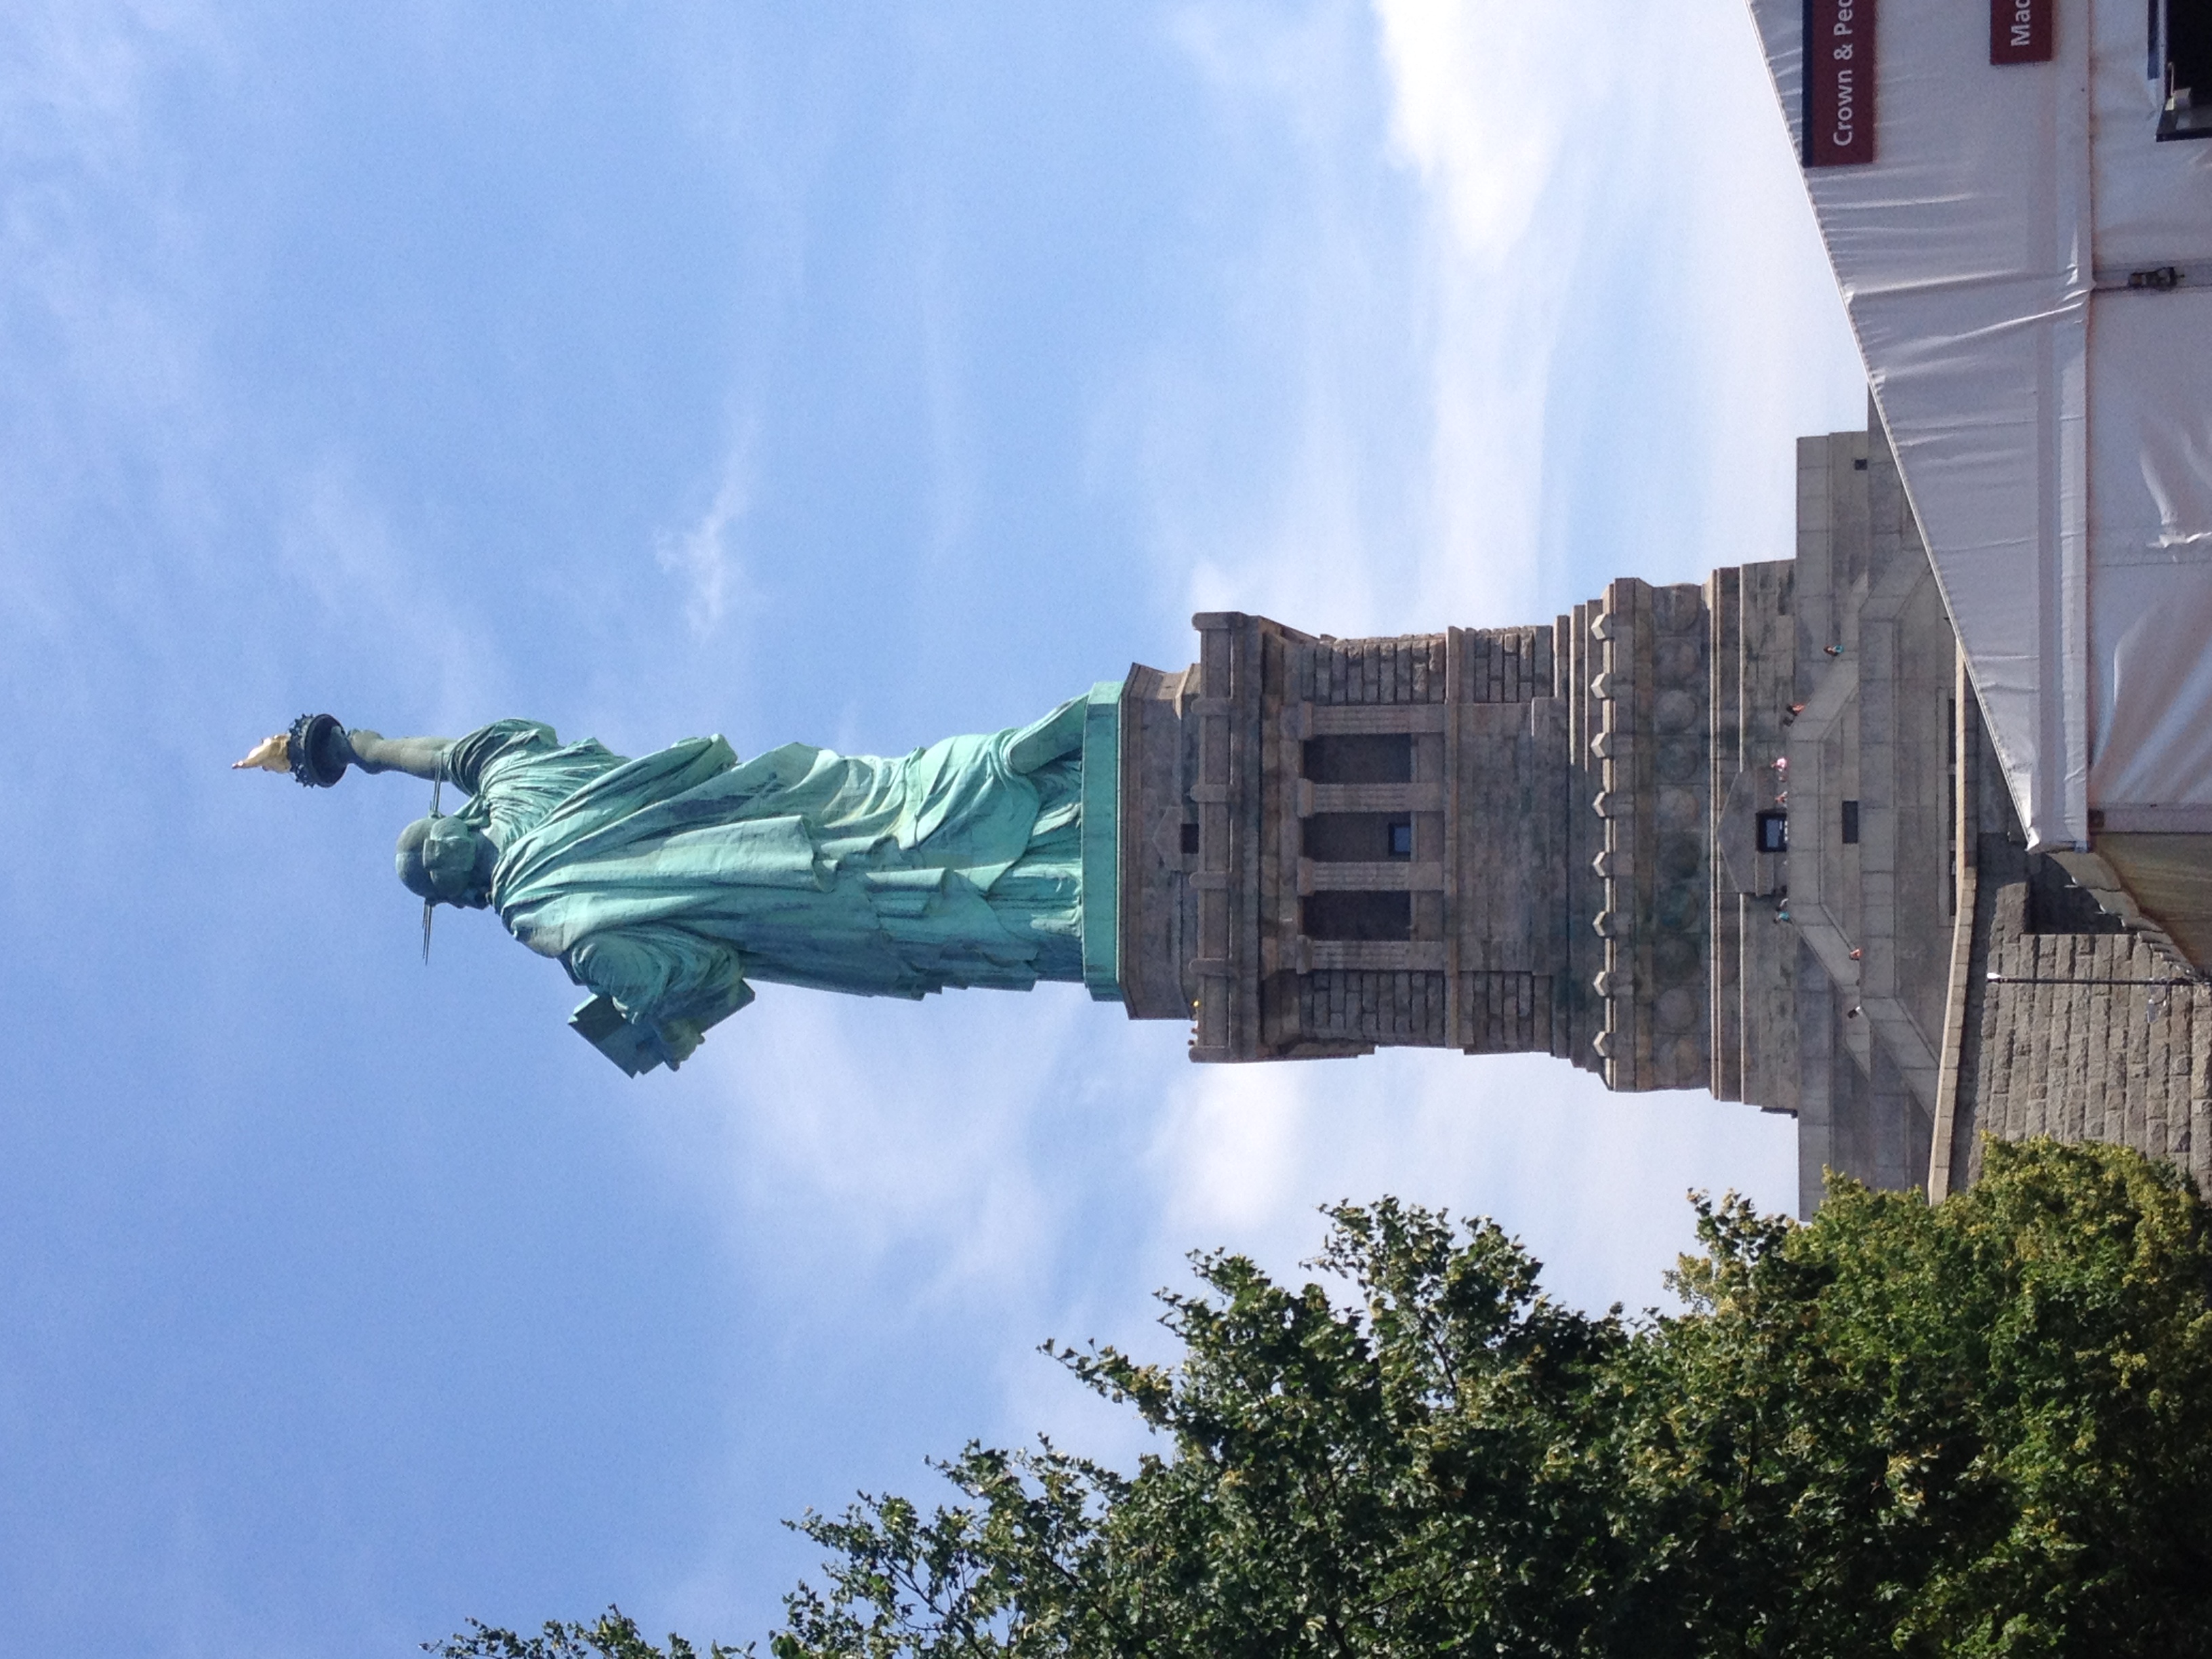 File:La Statua della Libertà vista dal retro..JPG - Wikimedia Commons